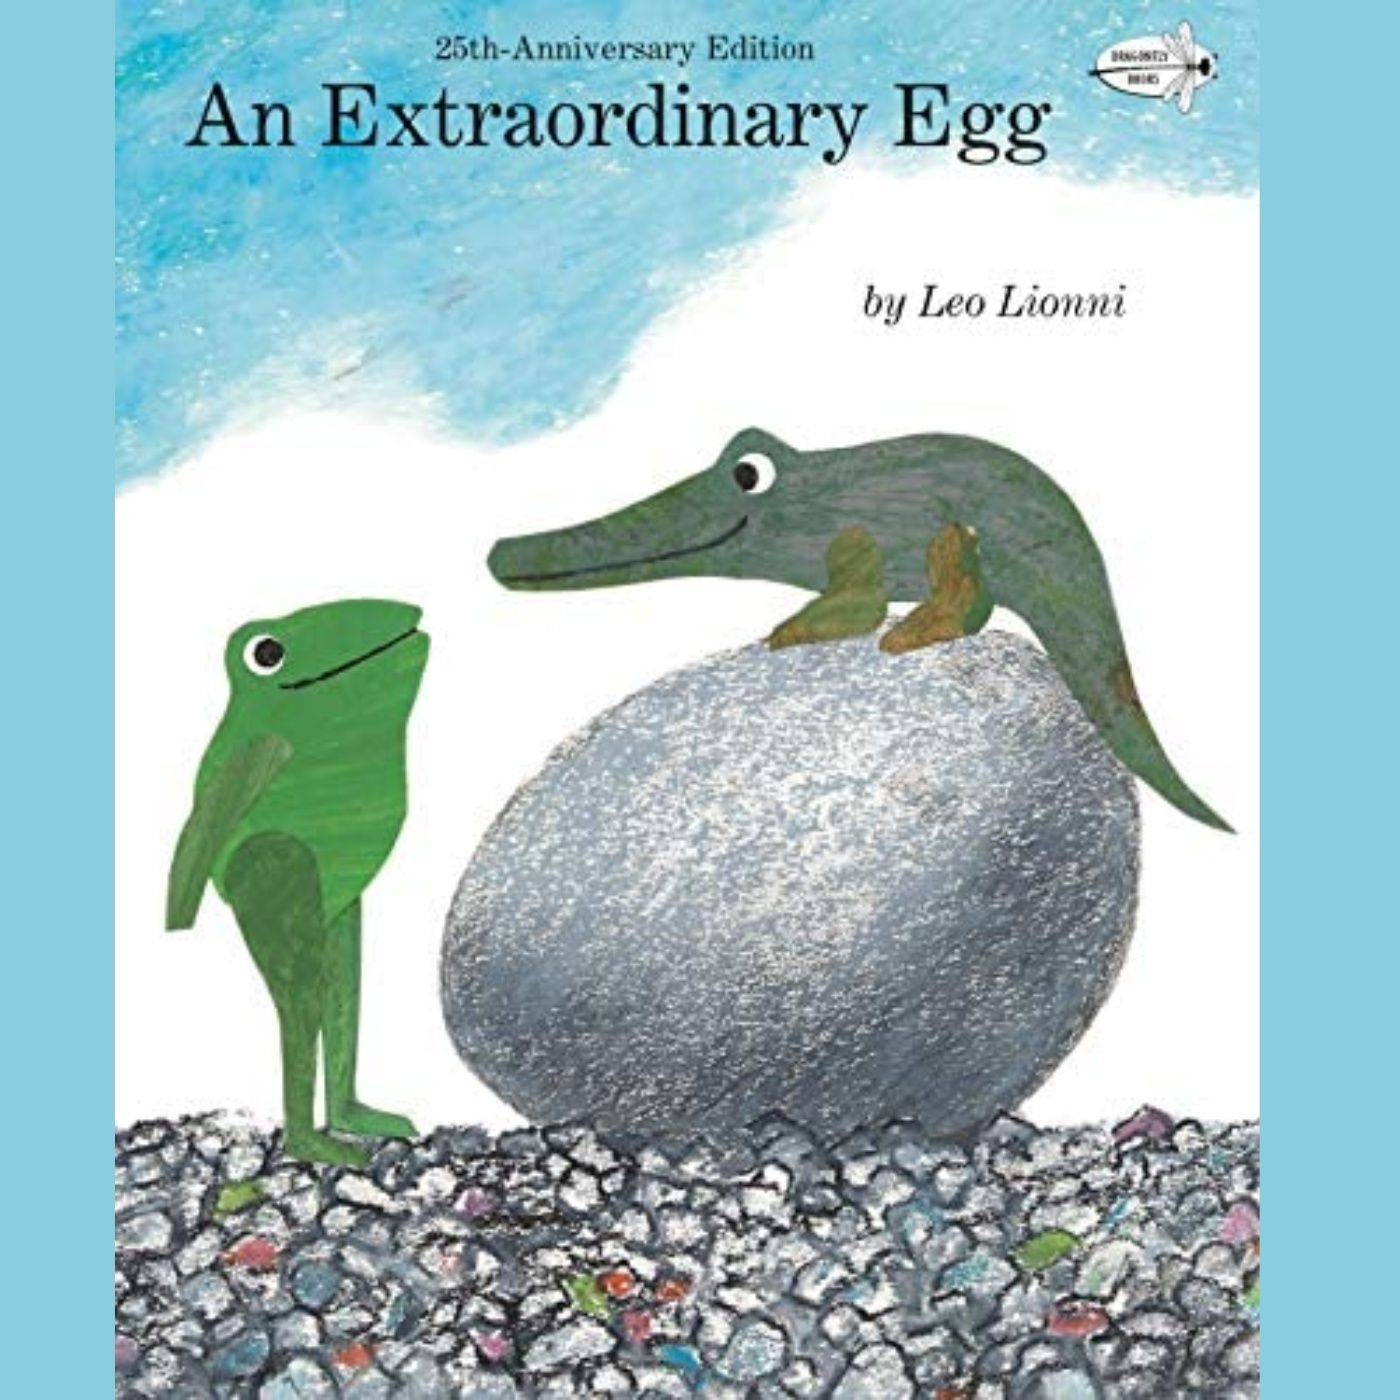 An Extraordinary Egg by Leo Lionni - Read by Martyn Kenneth